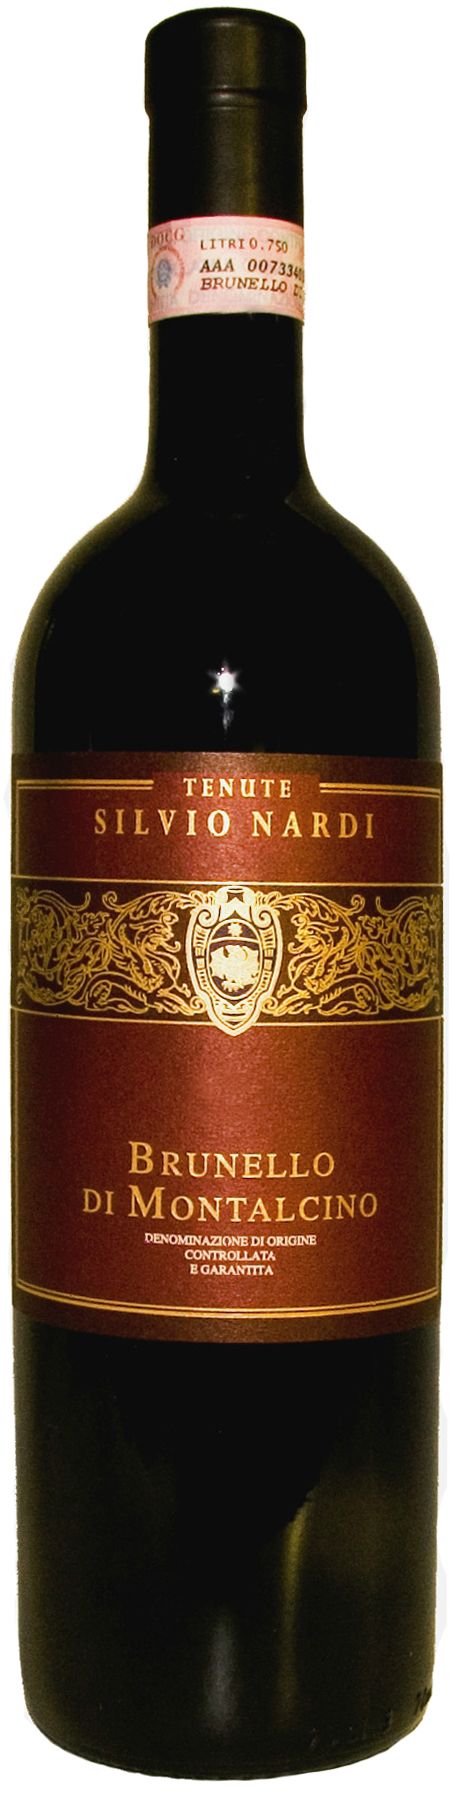 Tenute Silvio Nardi, Brunello Di Montalcino, 2004